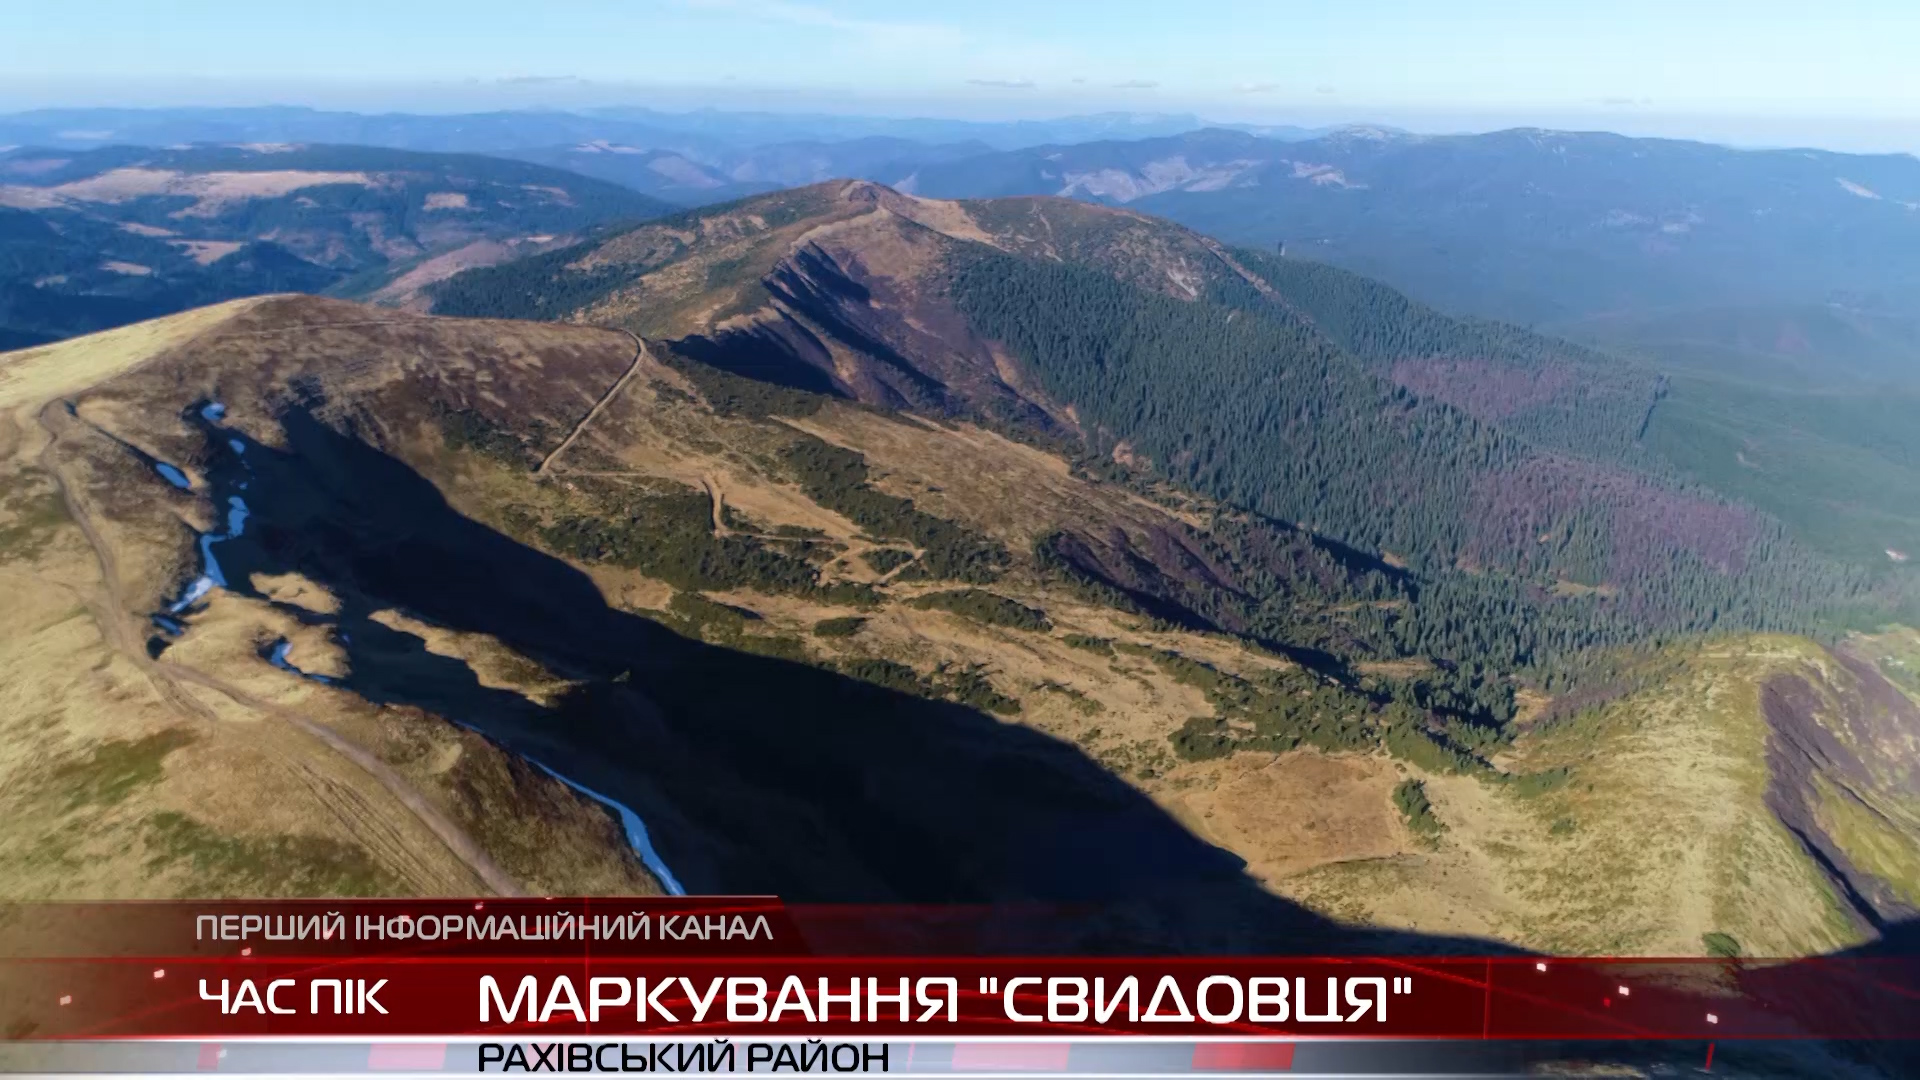 "Карпатські стежки" продовжують облаштовувати гірські туристичні маршрути (ВІДЕО)